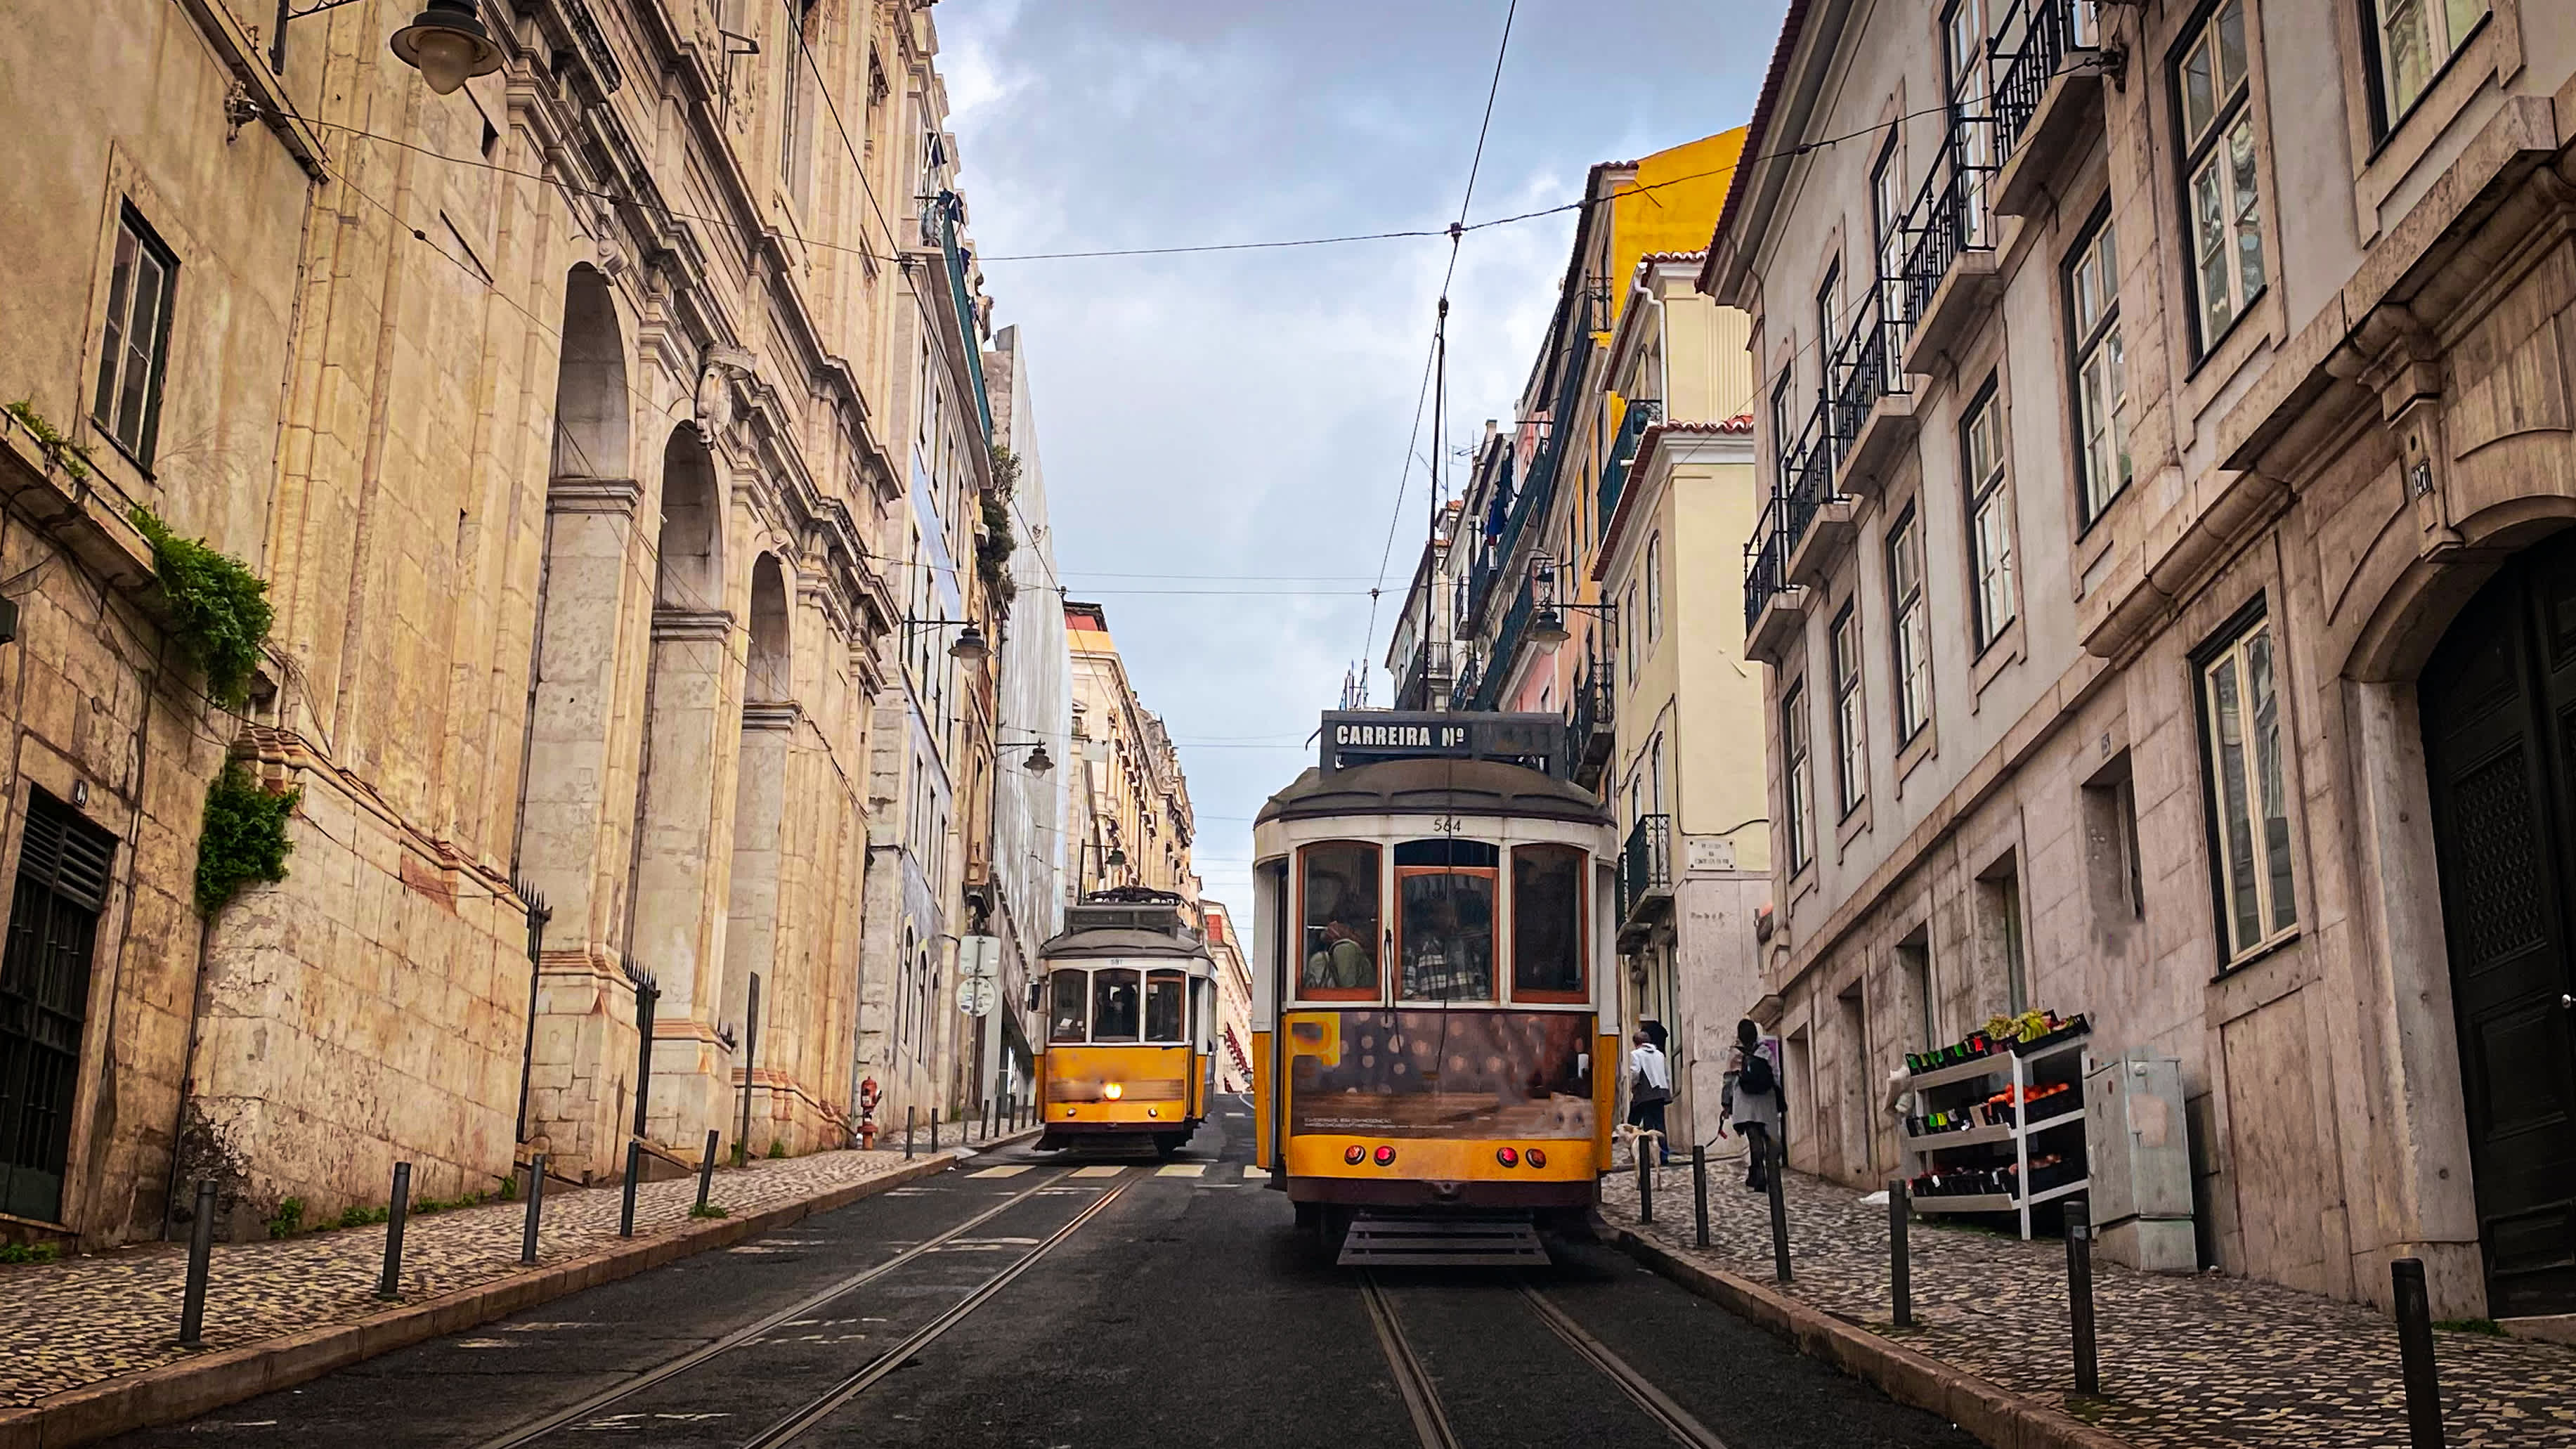 Die gelbe Elektrik in Lissabon stellt eine Form des öffentlichen Verkehrs und auch Touristen für diejenigen dar, die die Stadt besuchen möchten.